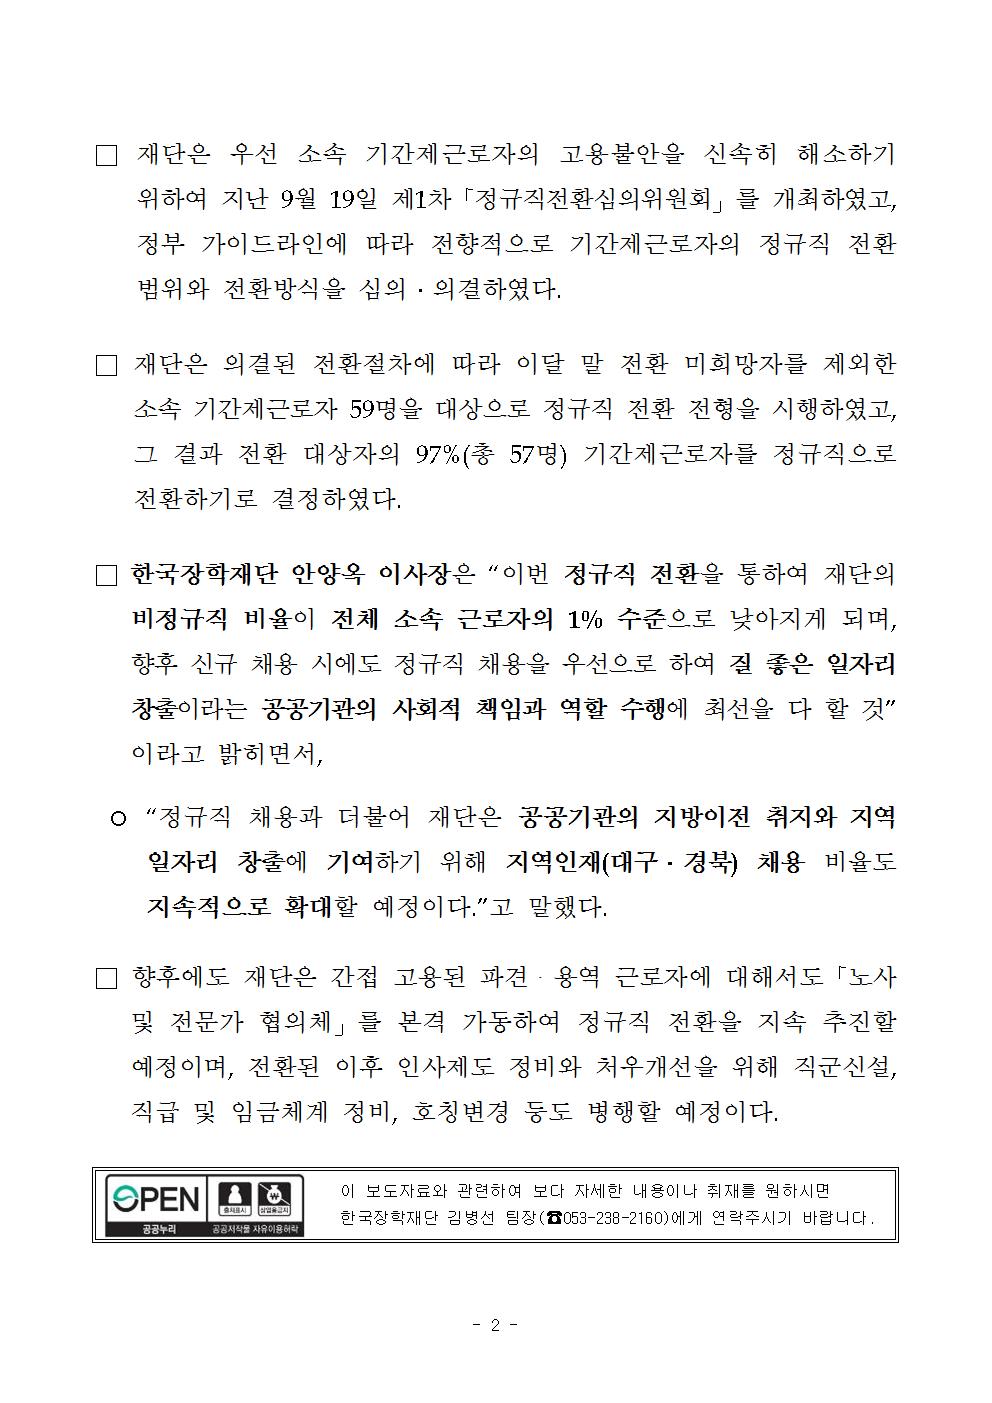 09-28(목)[보도자료] 한국장학재단, 좋은 일자리 창출을 위한 선도적인 정규직 전환 추진002.jpg